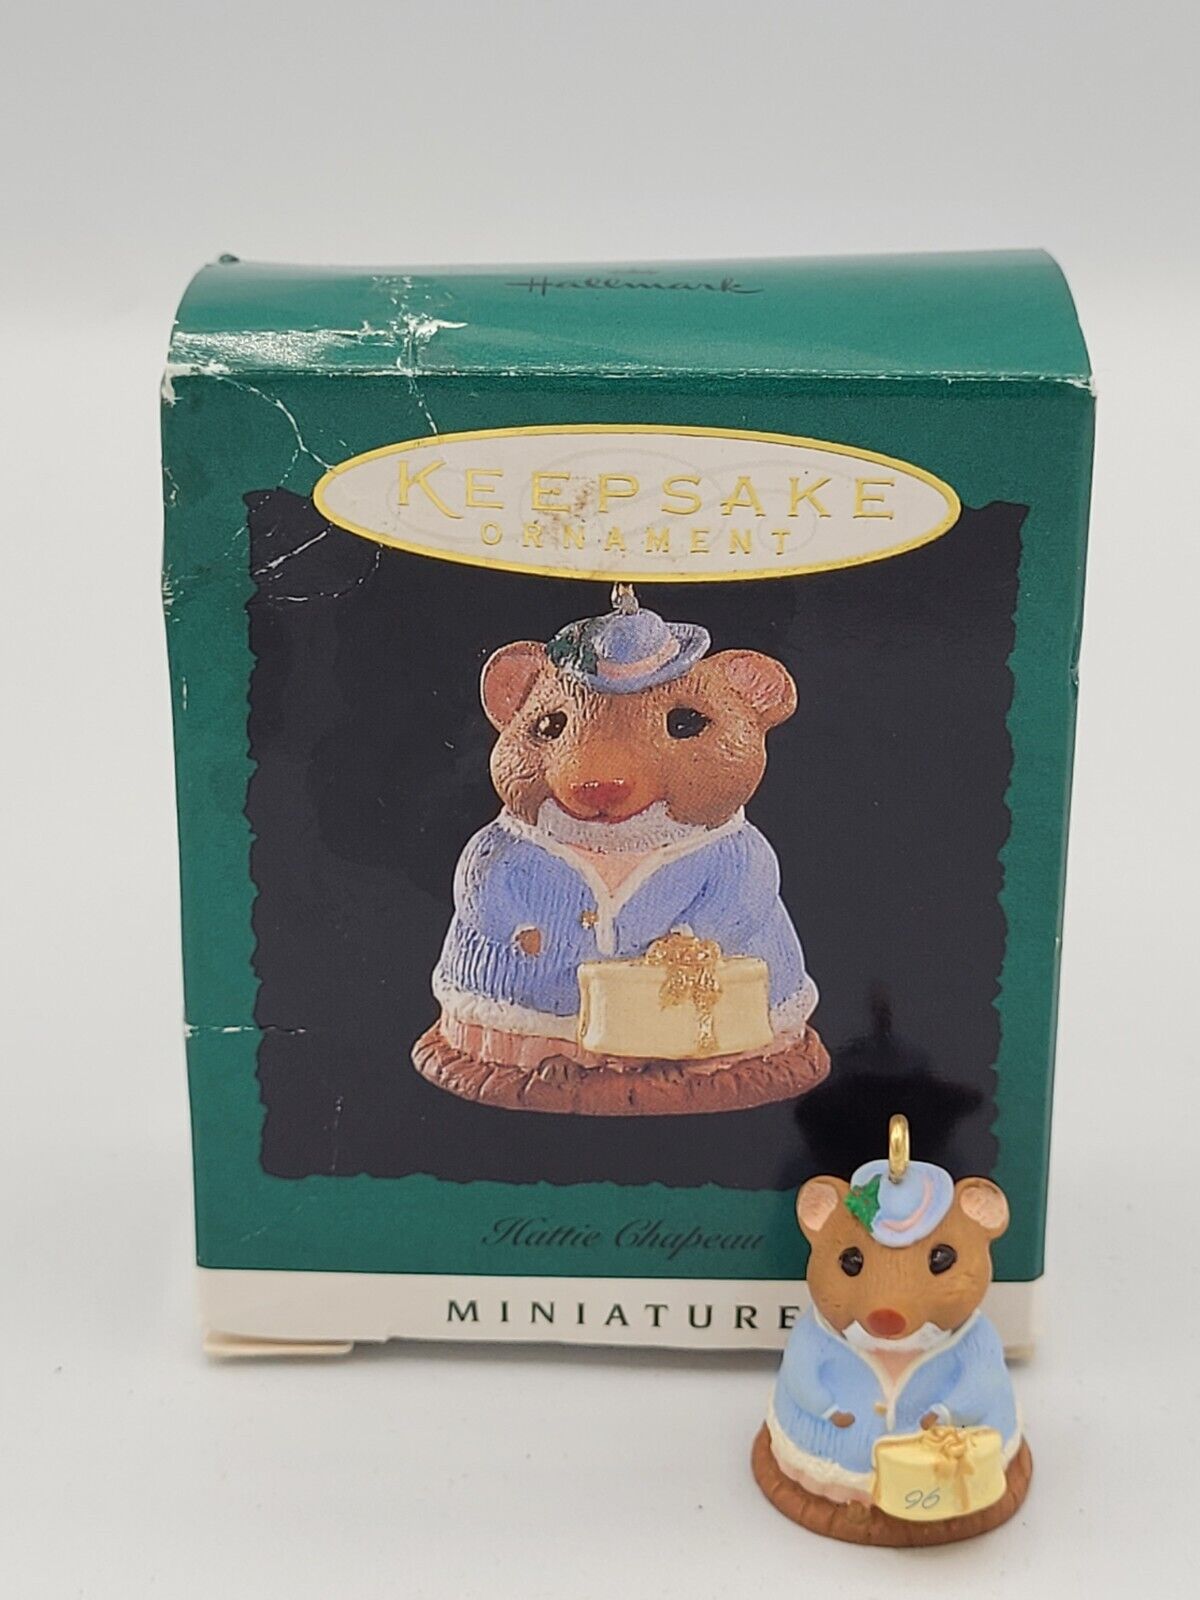 Hallmark Keepsake Miniature Christmas Ornament - Hattie Chapeau - 1996 - MIB